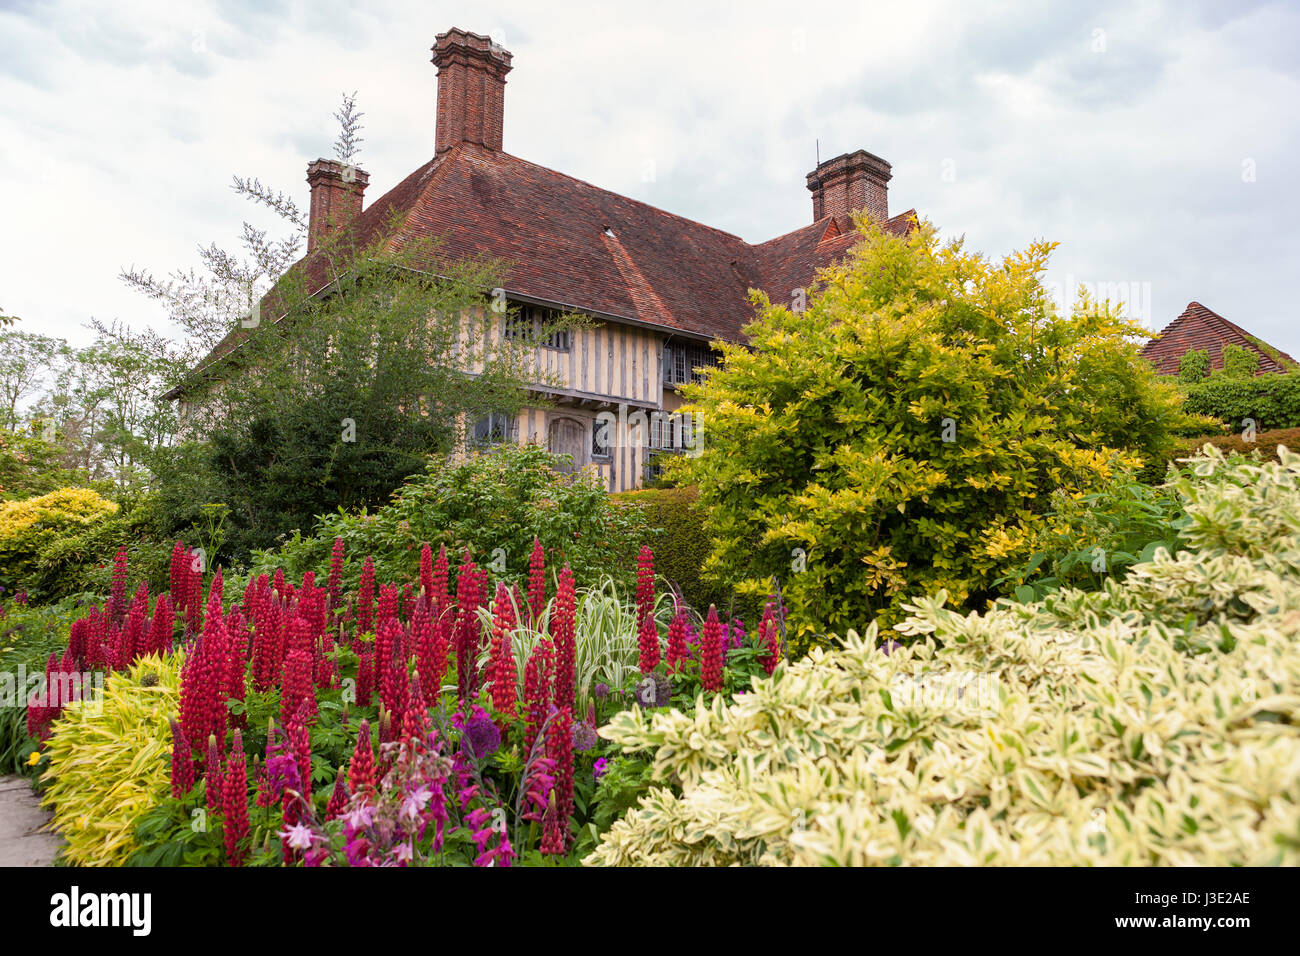 Christopher Lloyd's Great Dixter Manor Haus und Garten, Nothiam, East Sussex, England, UK: die lange Grenze entnommen Stockfoto